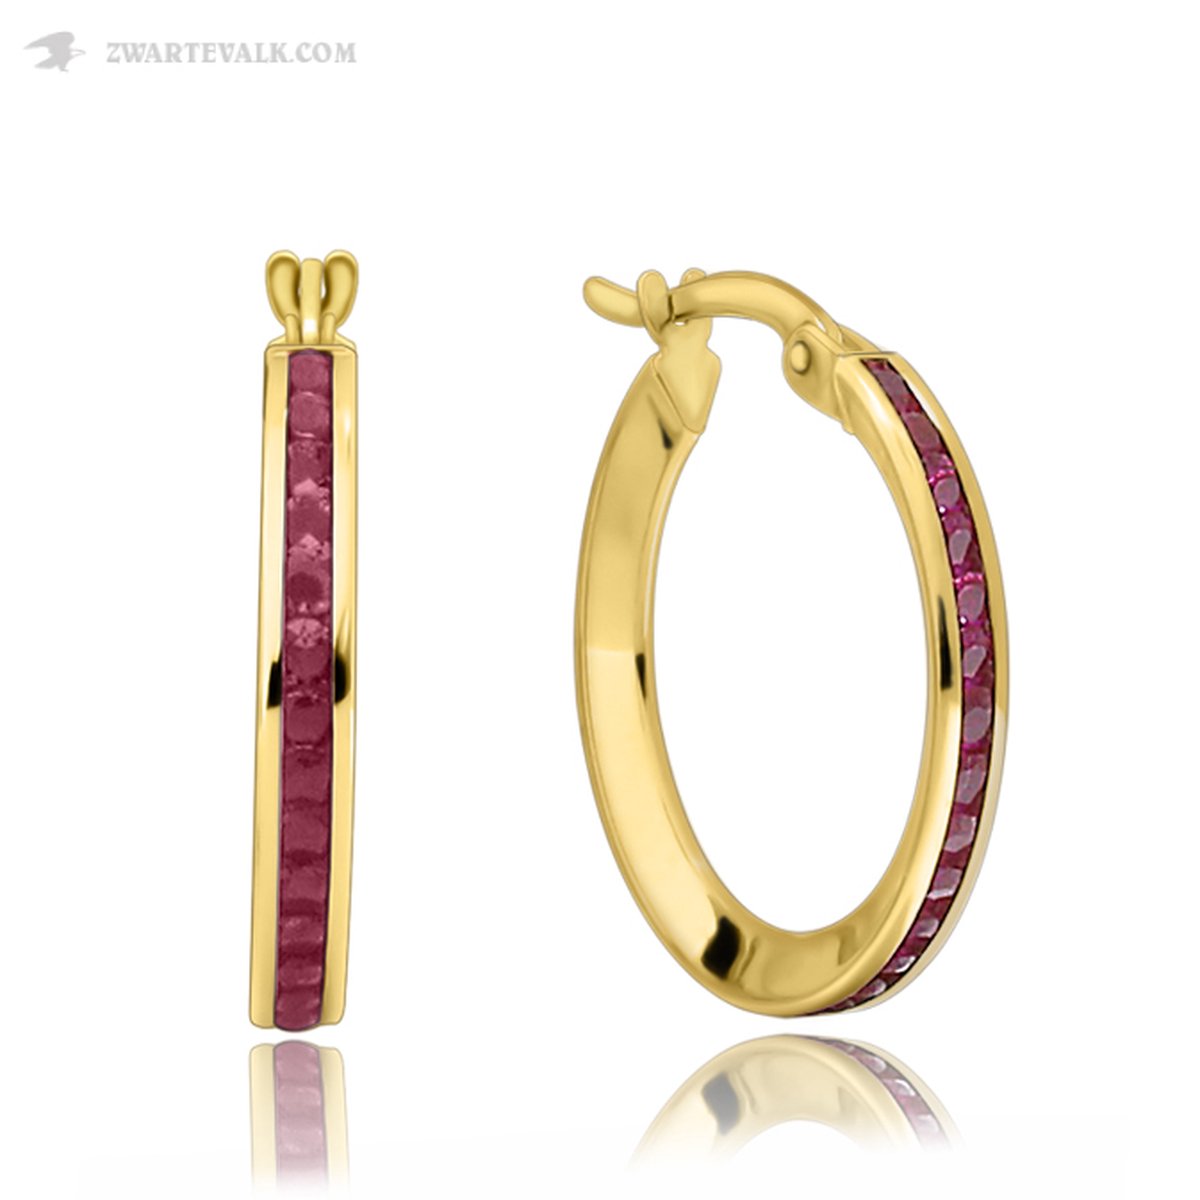 Juwelier Zwartevalk - 14 karaat gouden oorbellen met rode zirkonia 20mm/2.8mm